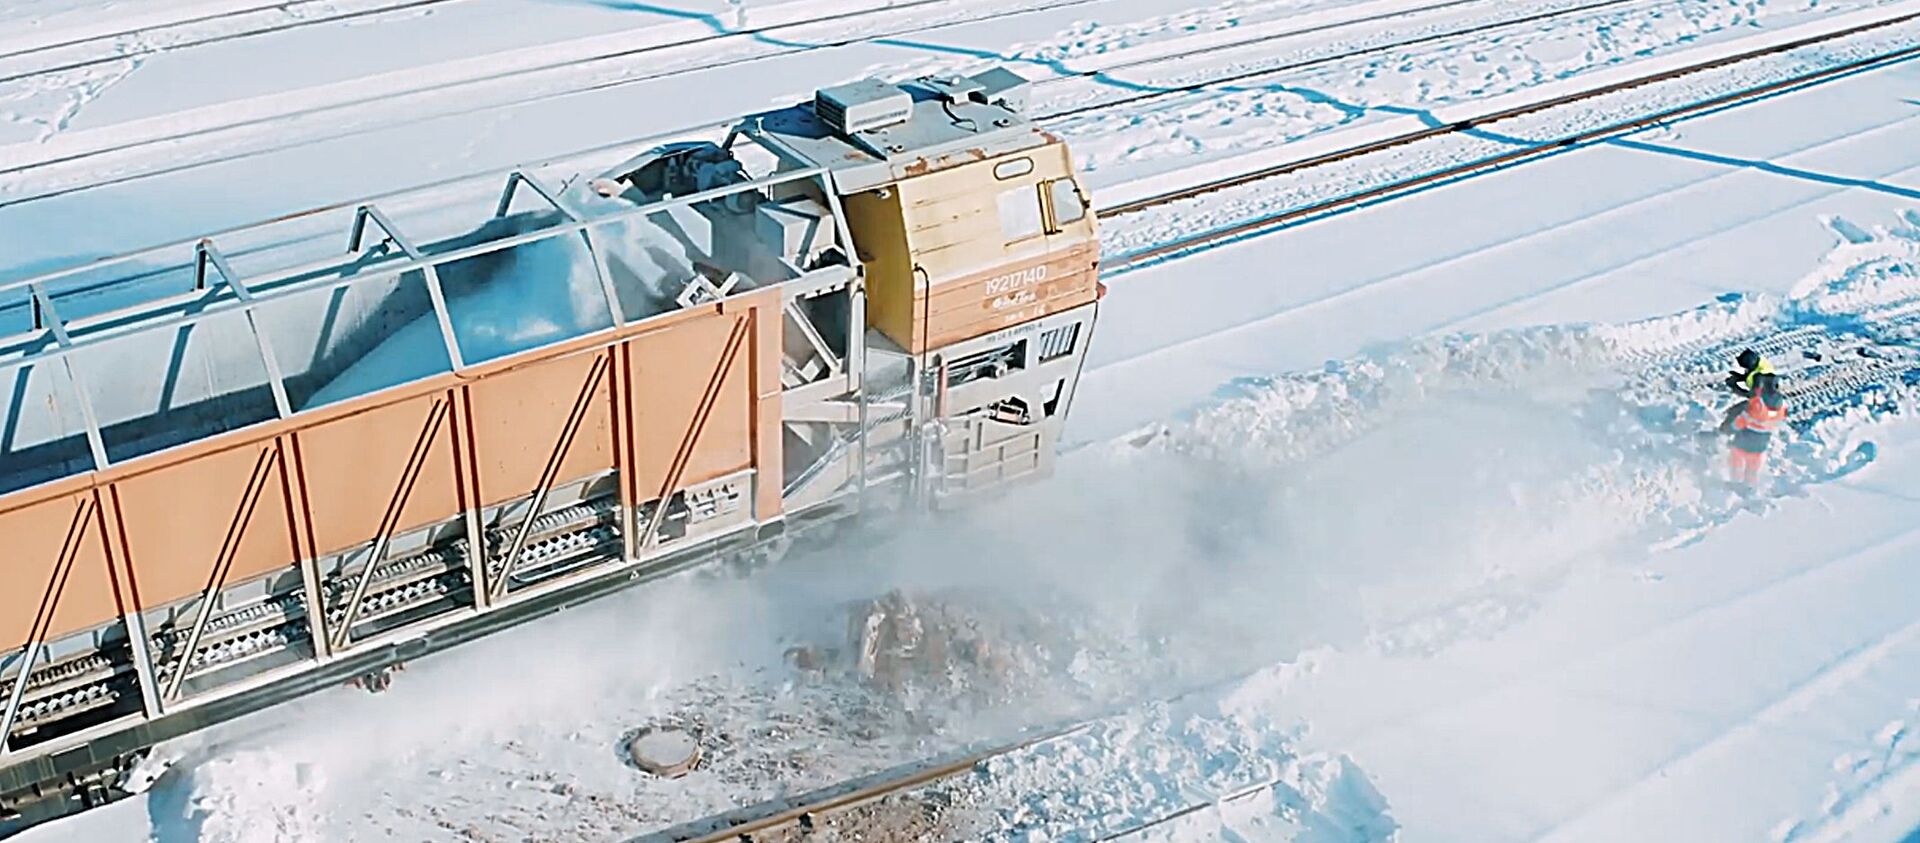 Литовские железные дороги показали на видео уборку снега - Sputnik Lietuva, 1920, 25.02.2021